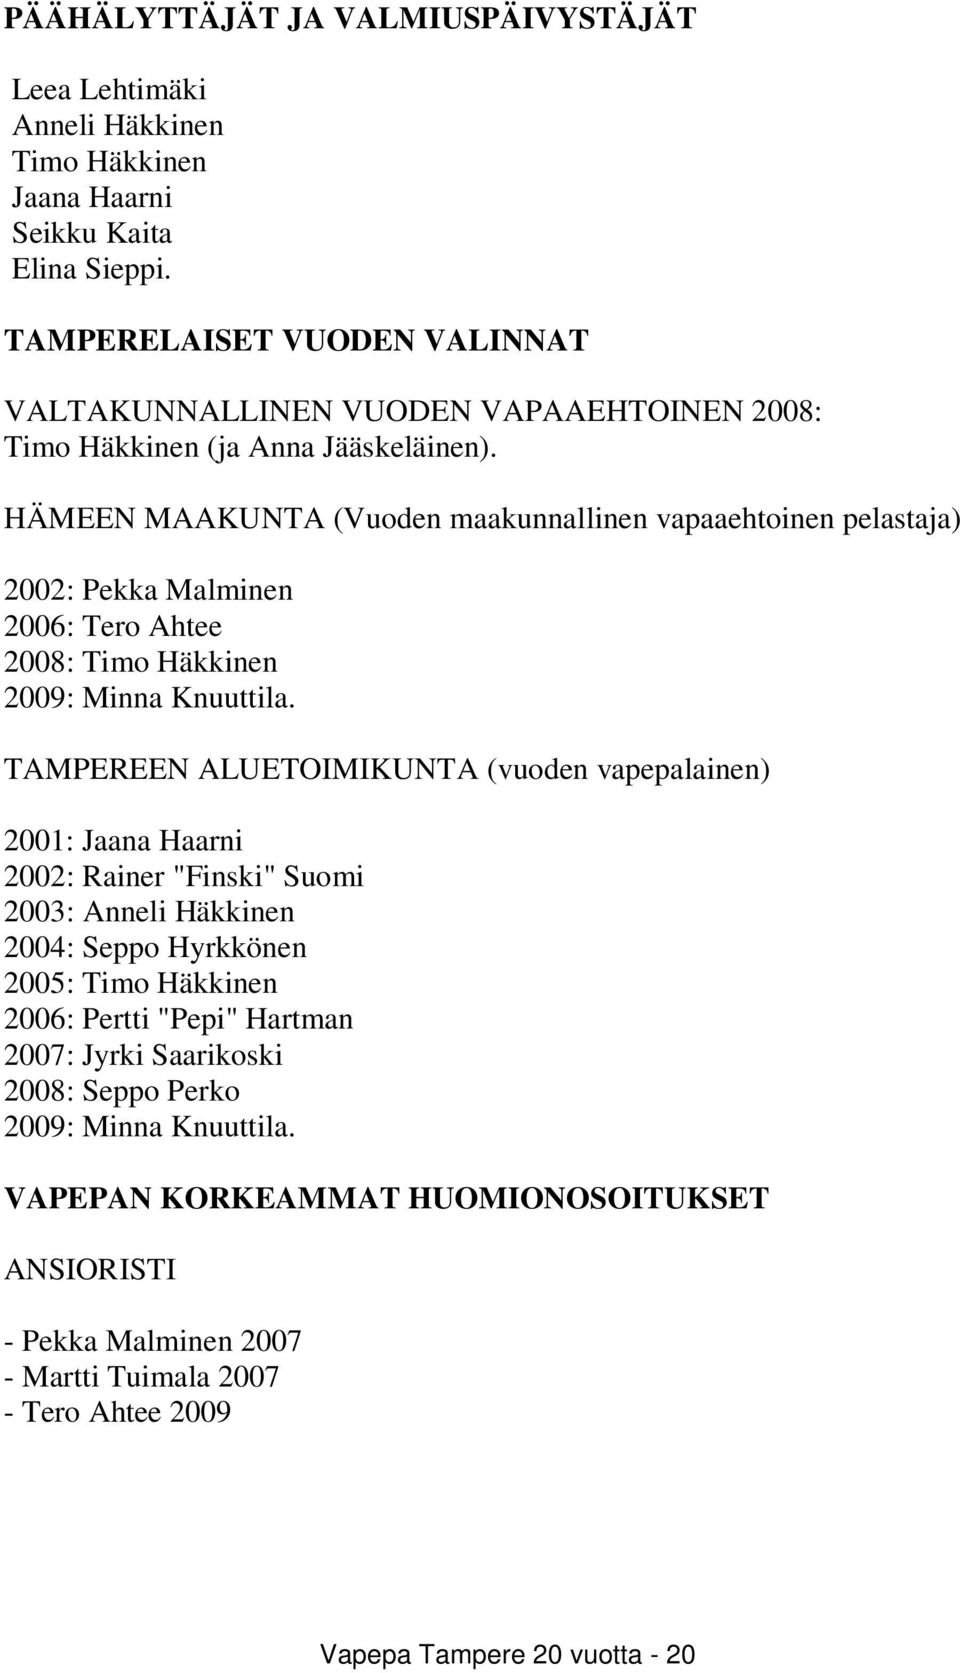 HÄMEEN MAAKUNTA (Vuoden maakunnallinen vapaaehtoinen pelastaja) 2002: Pekka Malminen 2006: Tero Ahtee 2008: Timo Häkkinen 2009: Minna Knuuttila.